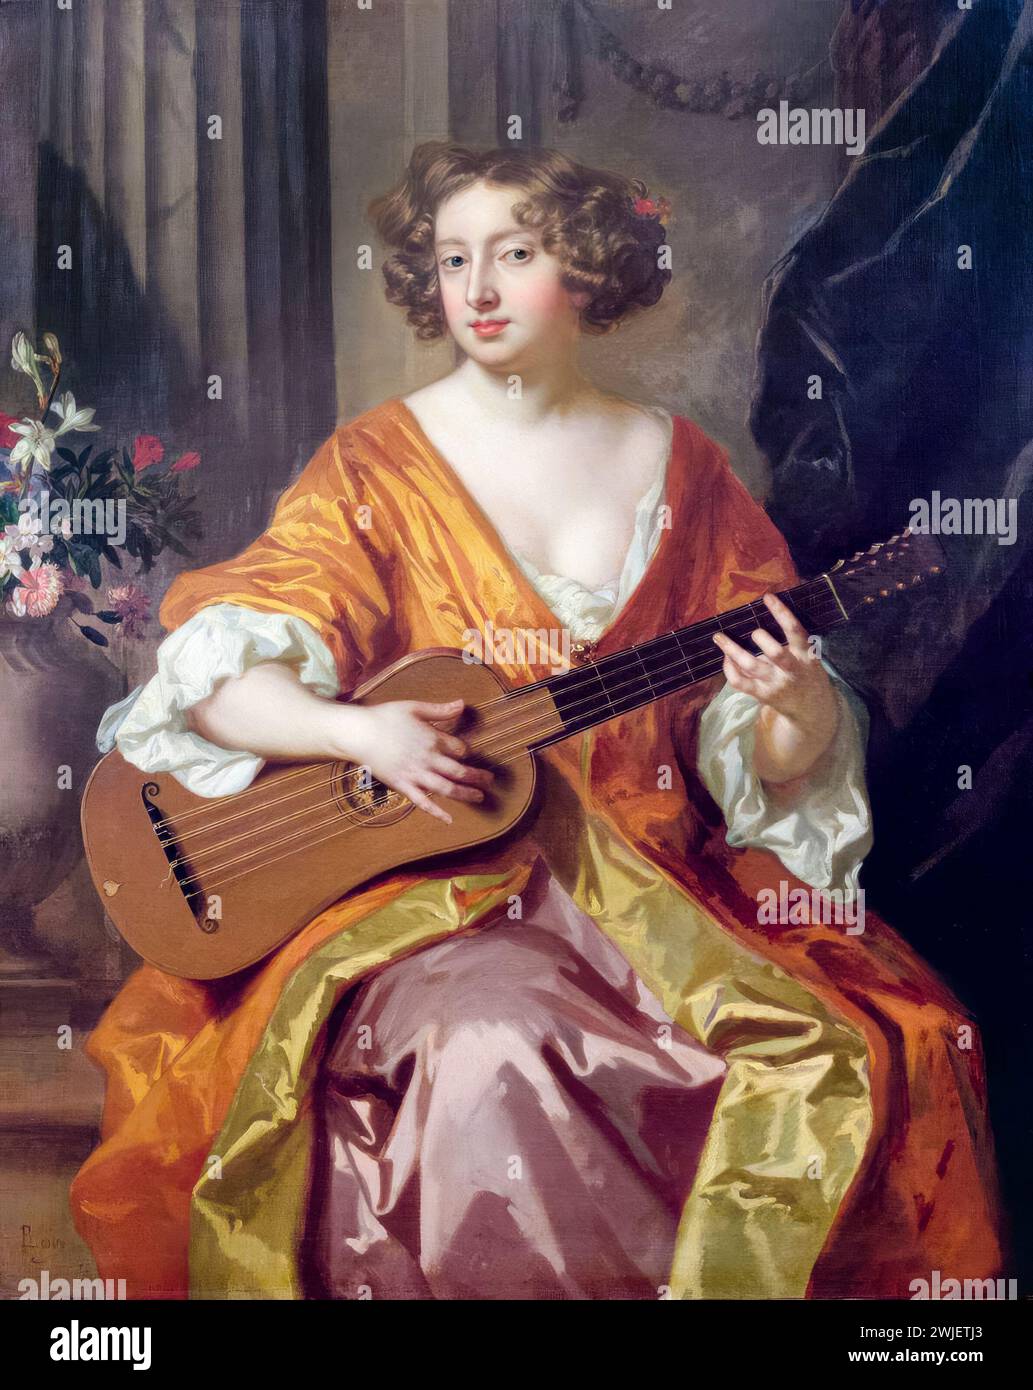 Mary „Moll“ Davis (ca. 1648–1708), Schauspielerin, Entertainerin und Geliebte von König Karl II. Von England, Gitarre, Porträtmalerei in Öl auf Leinwand von Sir Peter Lely, 1650-1680 Stockfoto